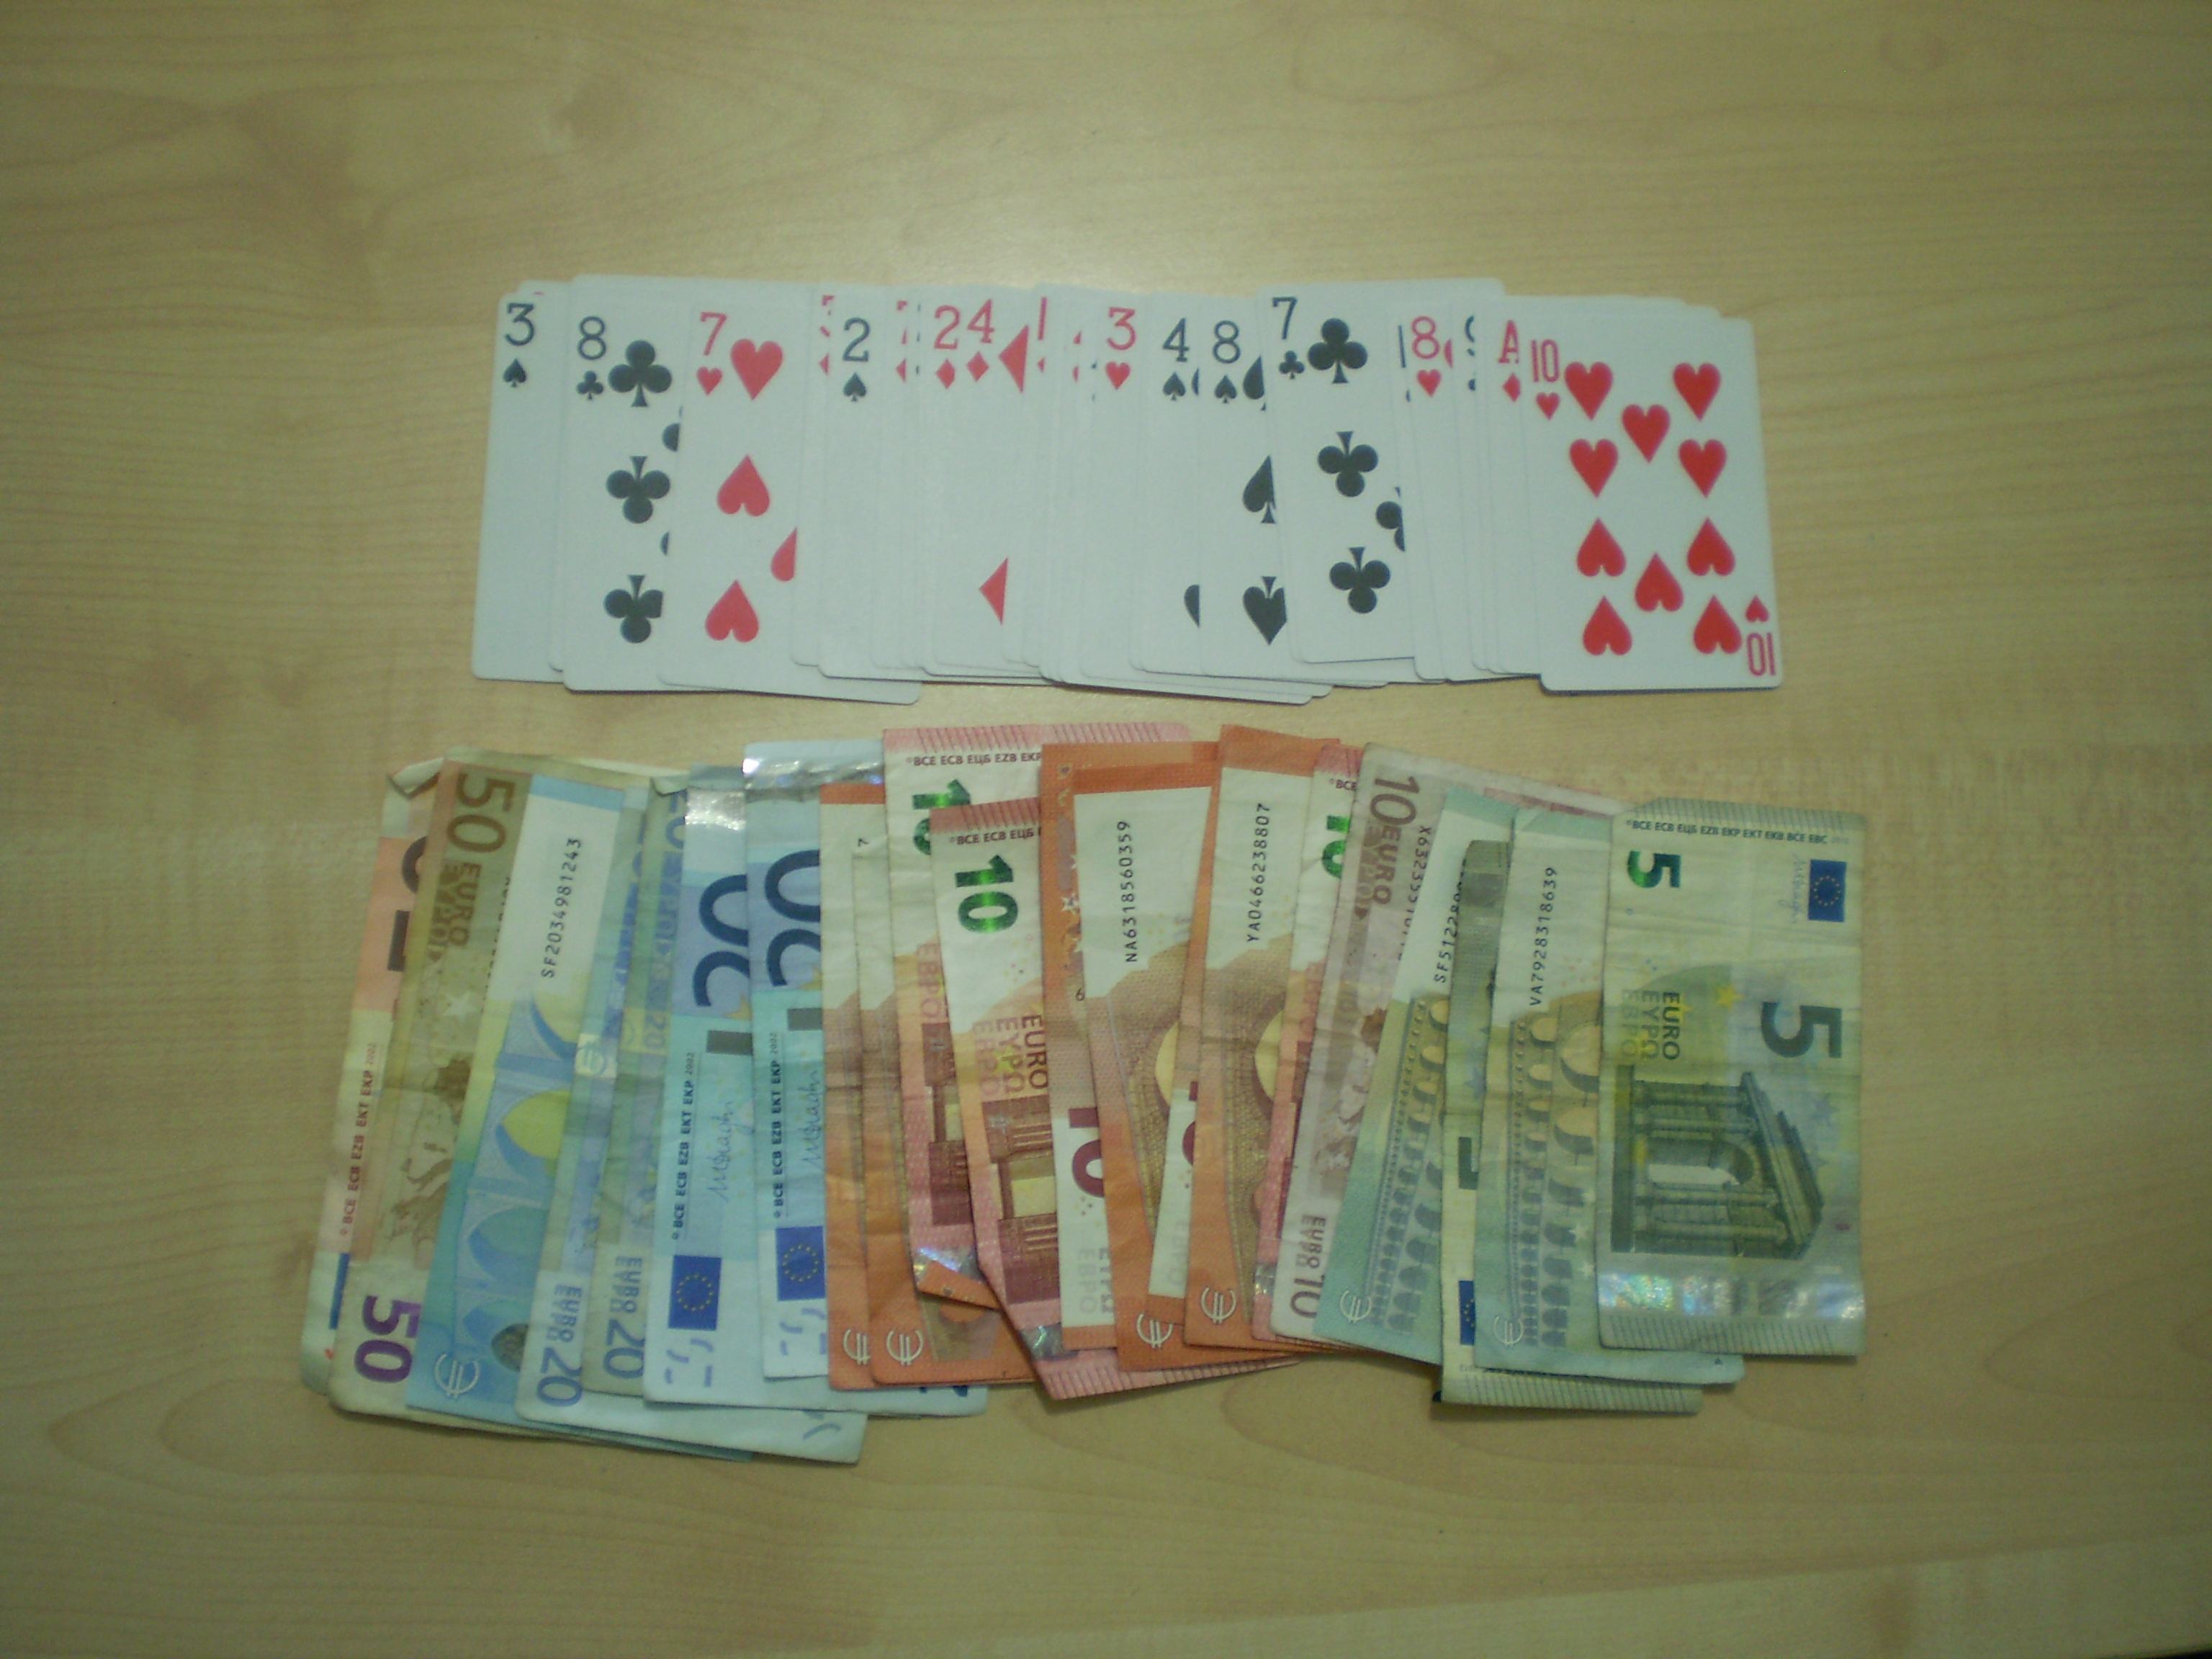 Συνελήφθησαν επτά άτομα για τυχερά παιγνίδια στην Αγιά Λάρισας